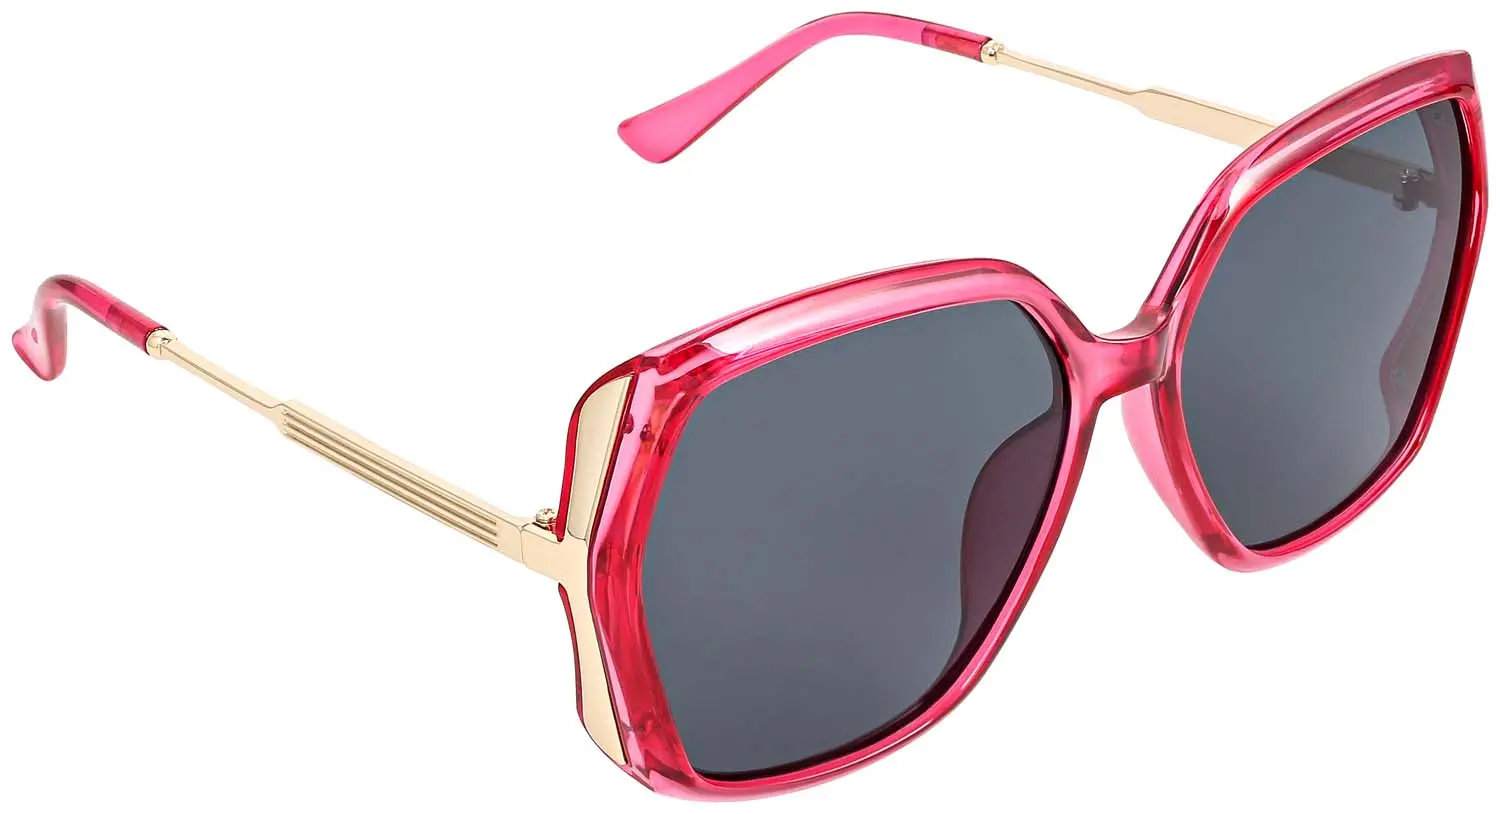 Sonnenbrille - Pink Wine